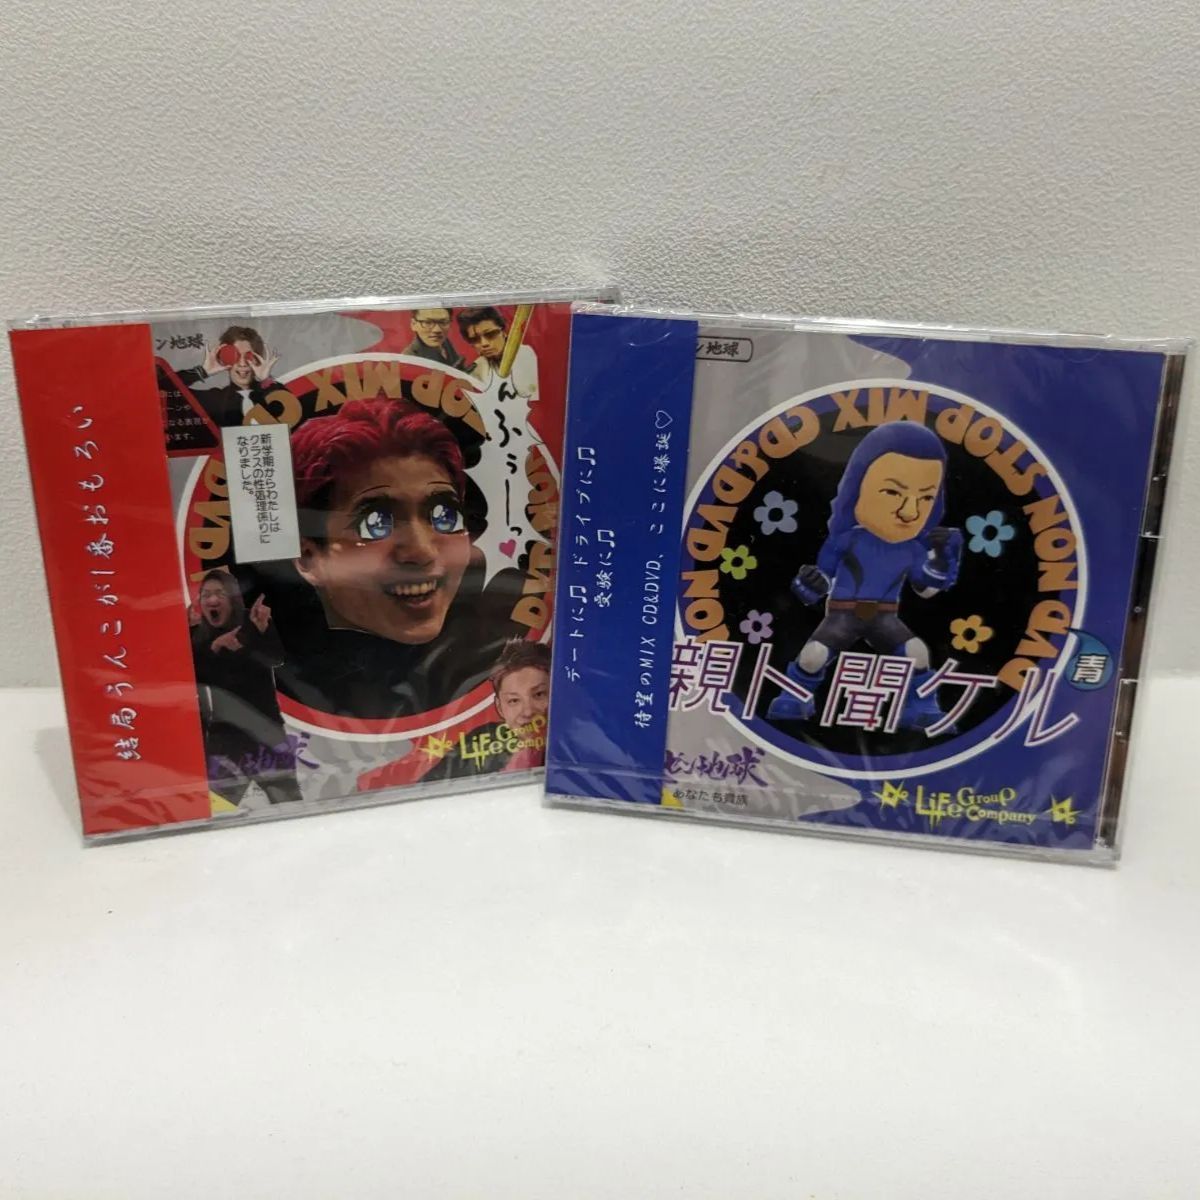 ミュージックレペゼン地球 CD&DVD 赤青セット 新品未開封 - ミュージック